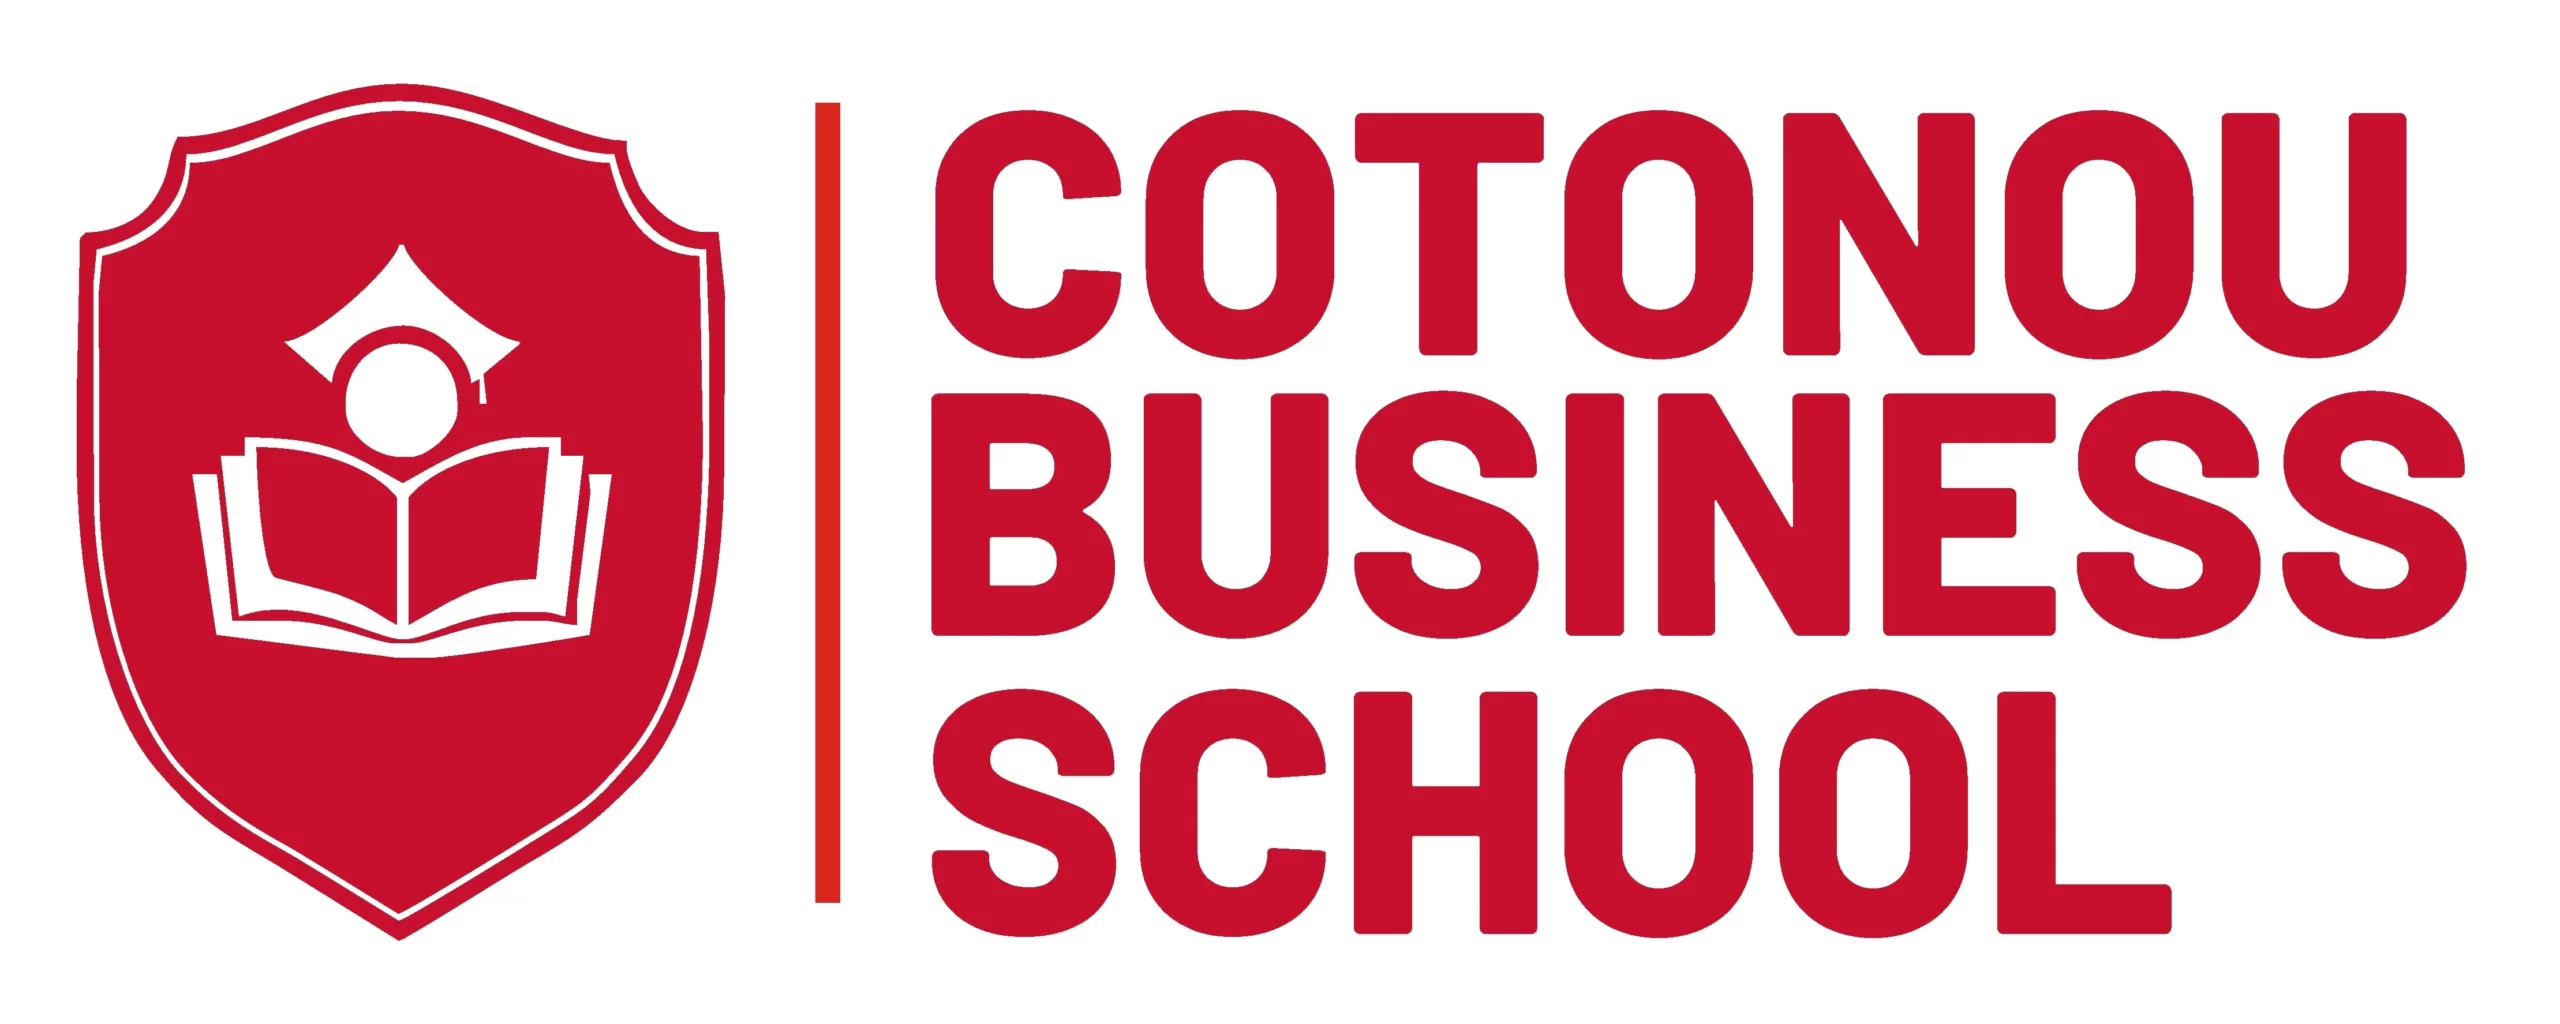 Cotonou Business School